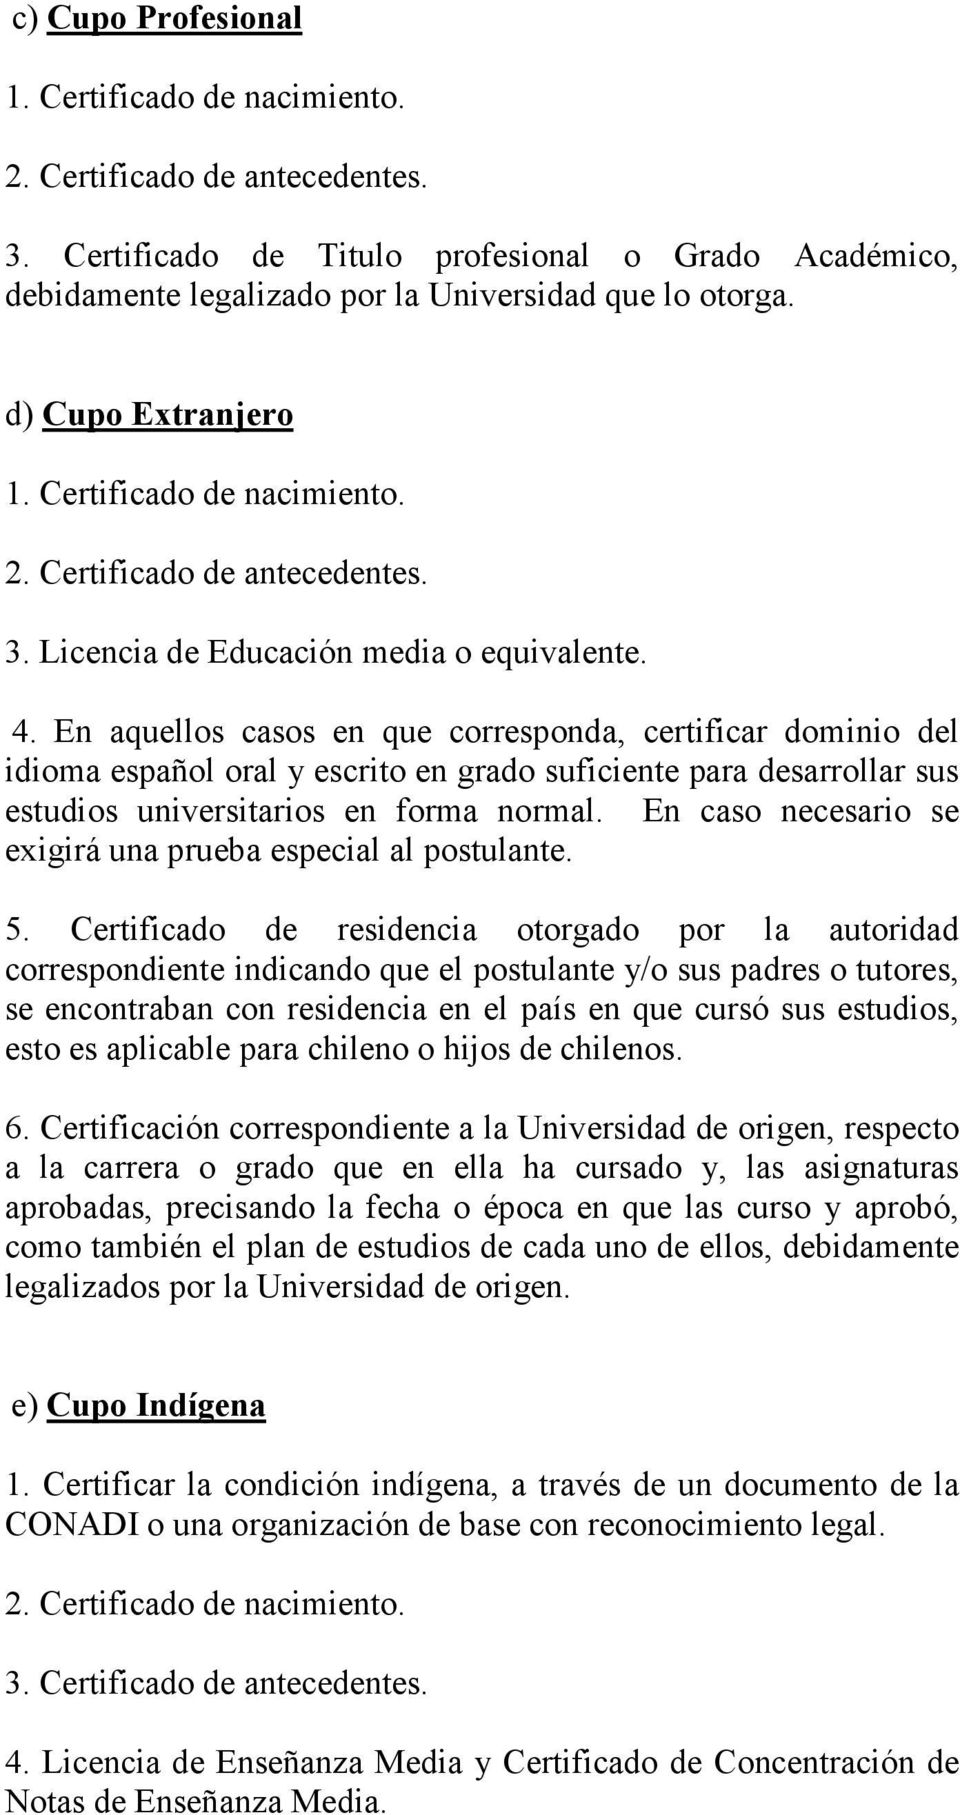 En aquellos casos en que corresponda, certificar dominio del idioma español oral y escrito en grado suficiente para desarrollar sus estudios universitarios en forma normal.